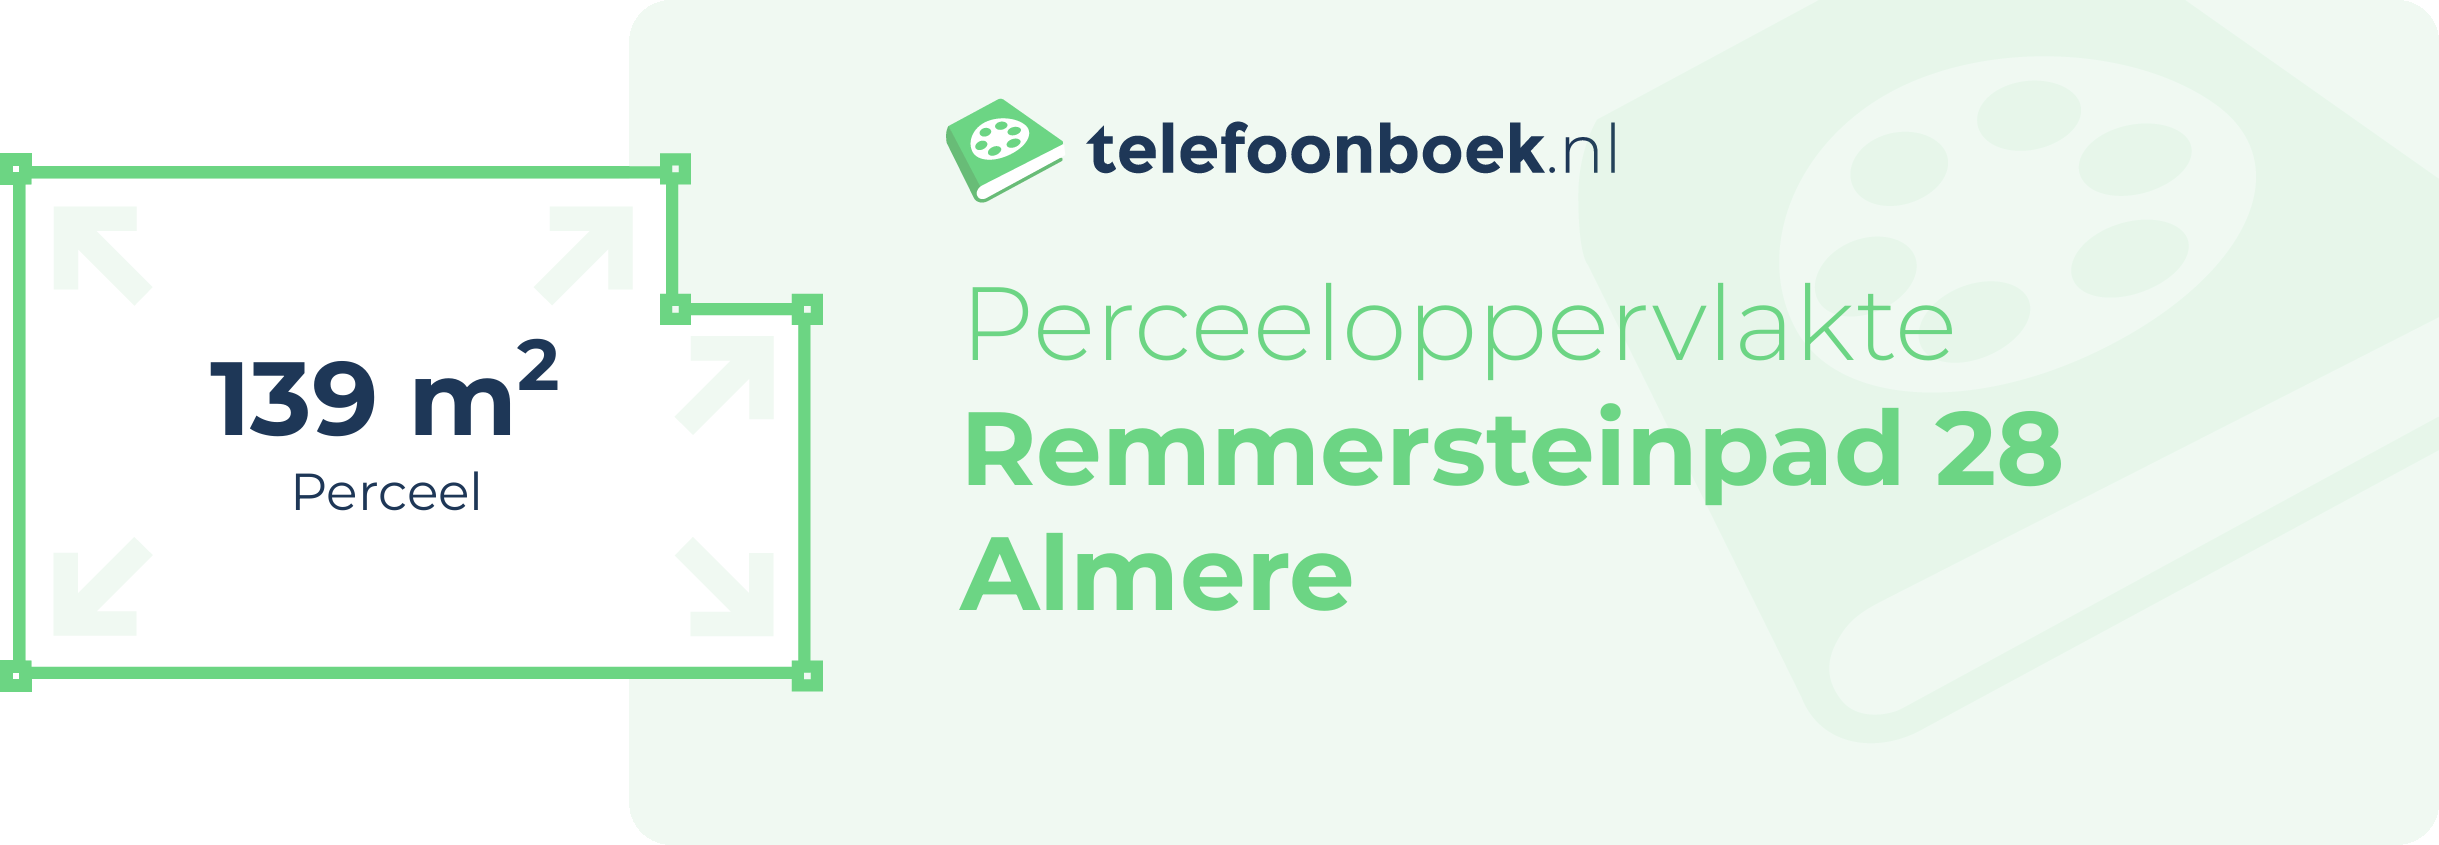 Perceeloppervlakte Remmersteinpad 28 Almere